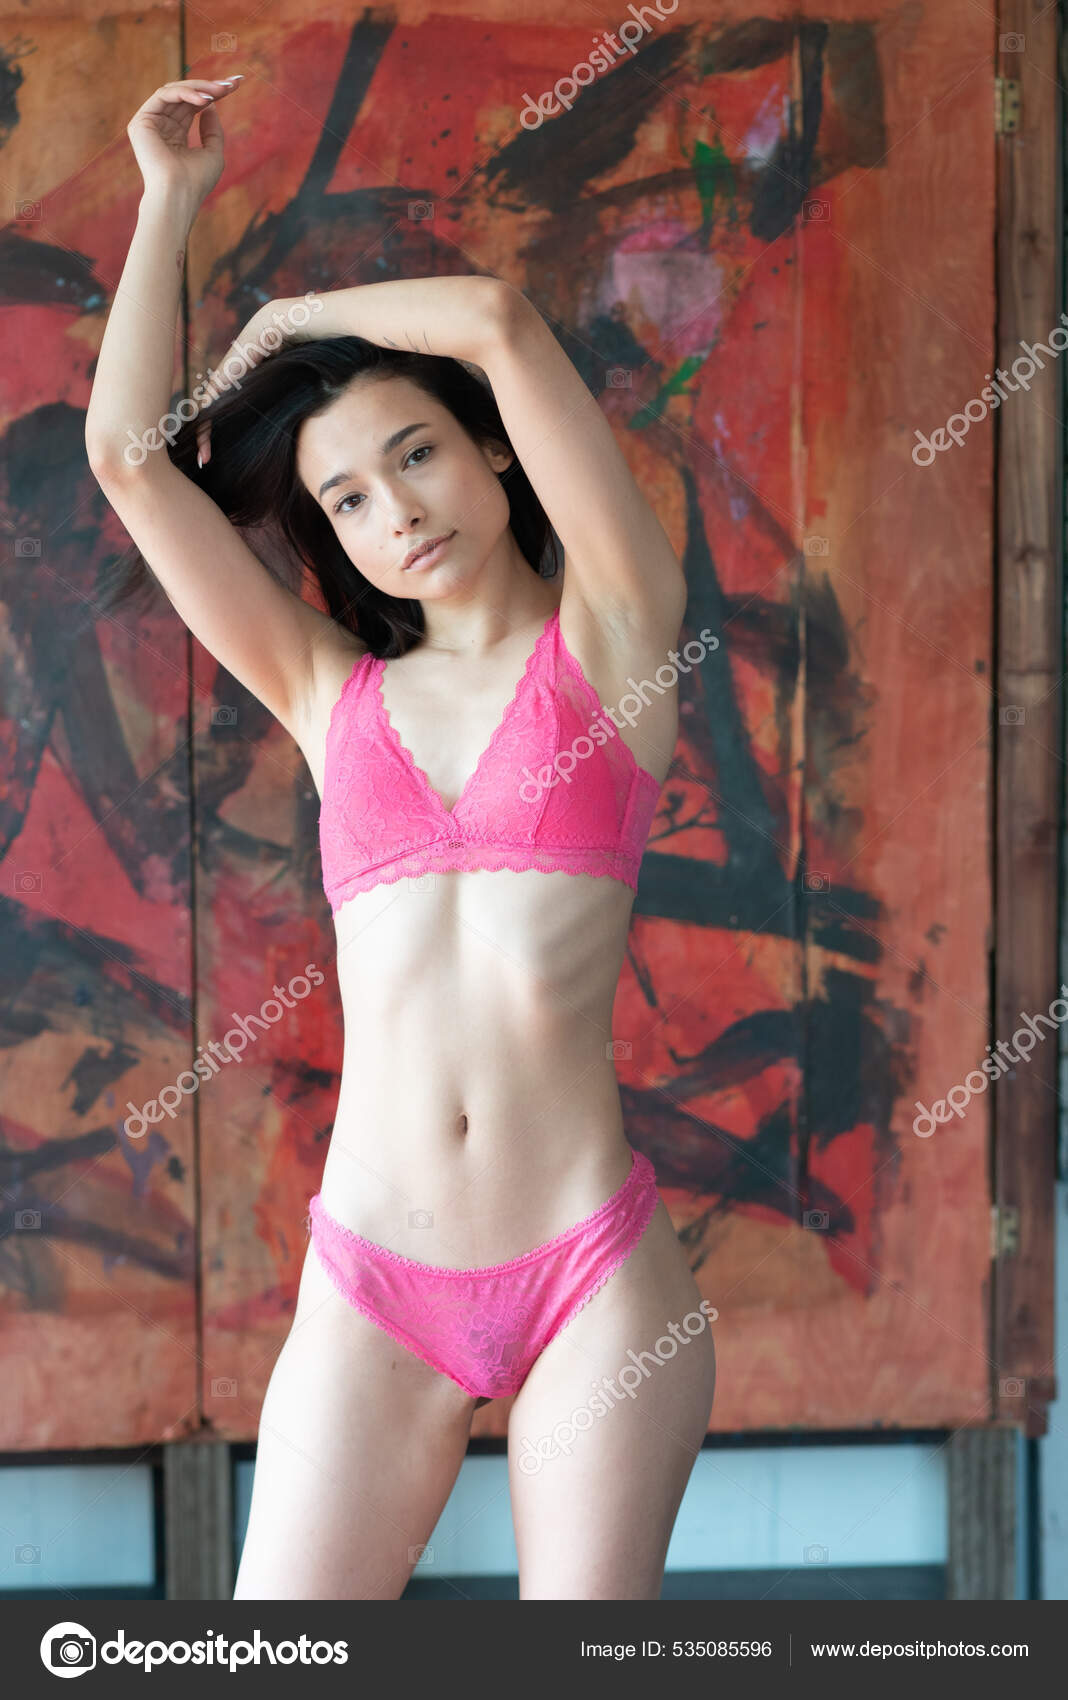 https://st.depositphotos.com/10086424/53508/i/1600/depositphotos_535085596-stock-photo-young-beautiful-woman-posing-red.jpg